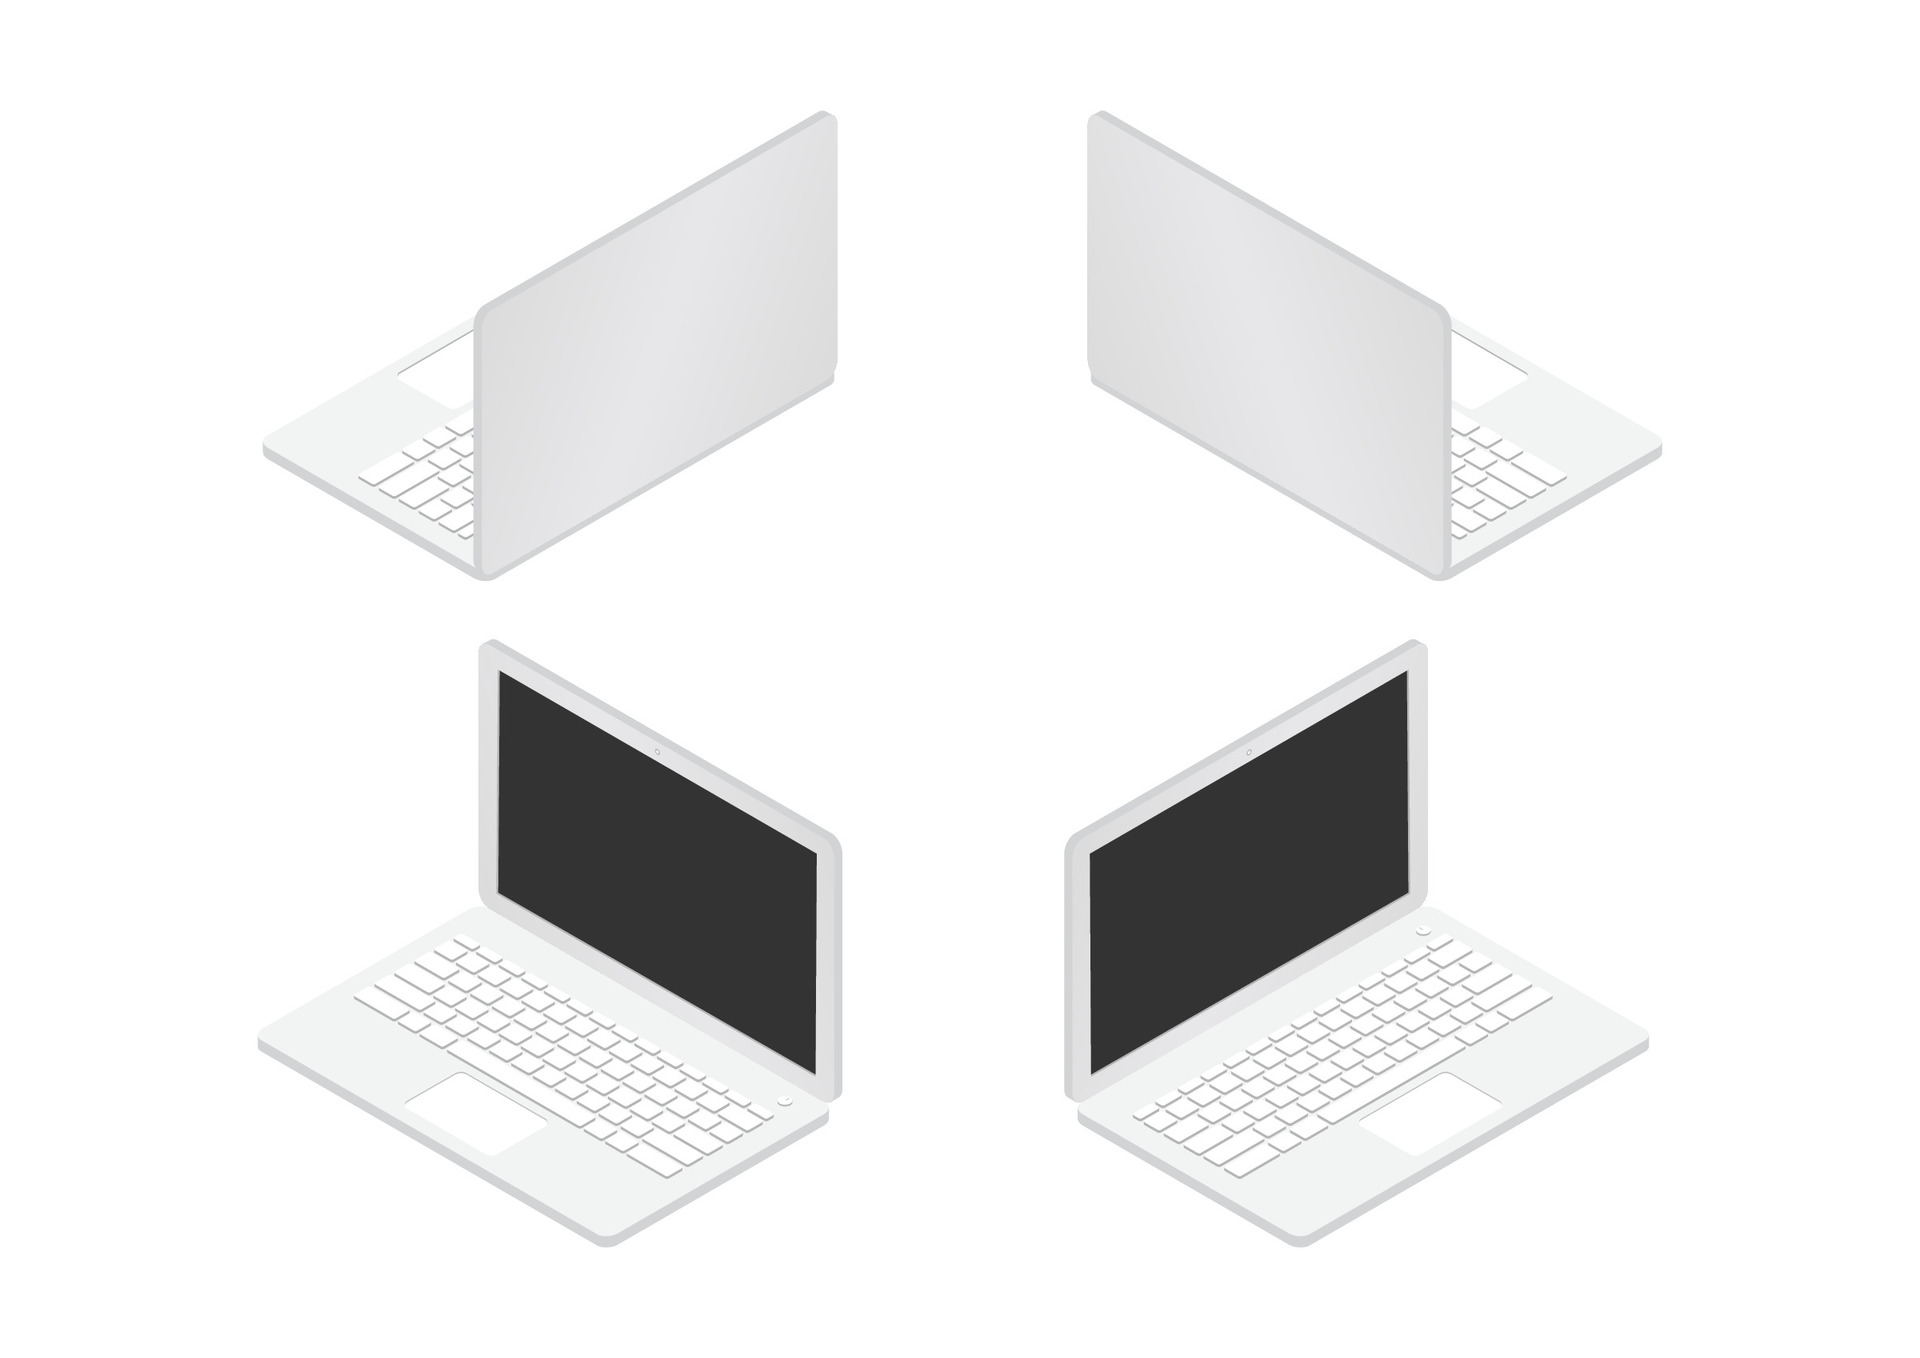 Auf dem Foto sind vier Laptop-Computer zu sehen. Sie sind in einer isometrischen Ansicht dargestellt, was bedeutet, dass sie in einer dreidimensionalen Form erscheinen, bei der die Größenverhältnisse gleichmäßig erhalten bleiben, um Tiefe zu simulieren. Zwei der Laptops sind geschlossen und von der Seite zu sehen, während die anderen beiden geöffnet sind und von oben betrachtet werden können. Die geöffneten Laptops zeigen schwarze Bildschirme und weiße Tastaturen, und einer von ihnen hat ein Touchpad. Alle Geräte haben ein schlankes, modernes Design in einer weißen oder hellgrauen Farbe